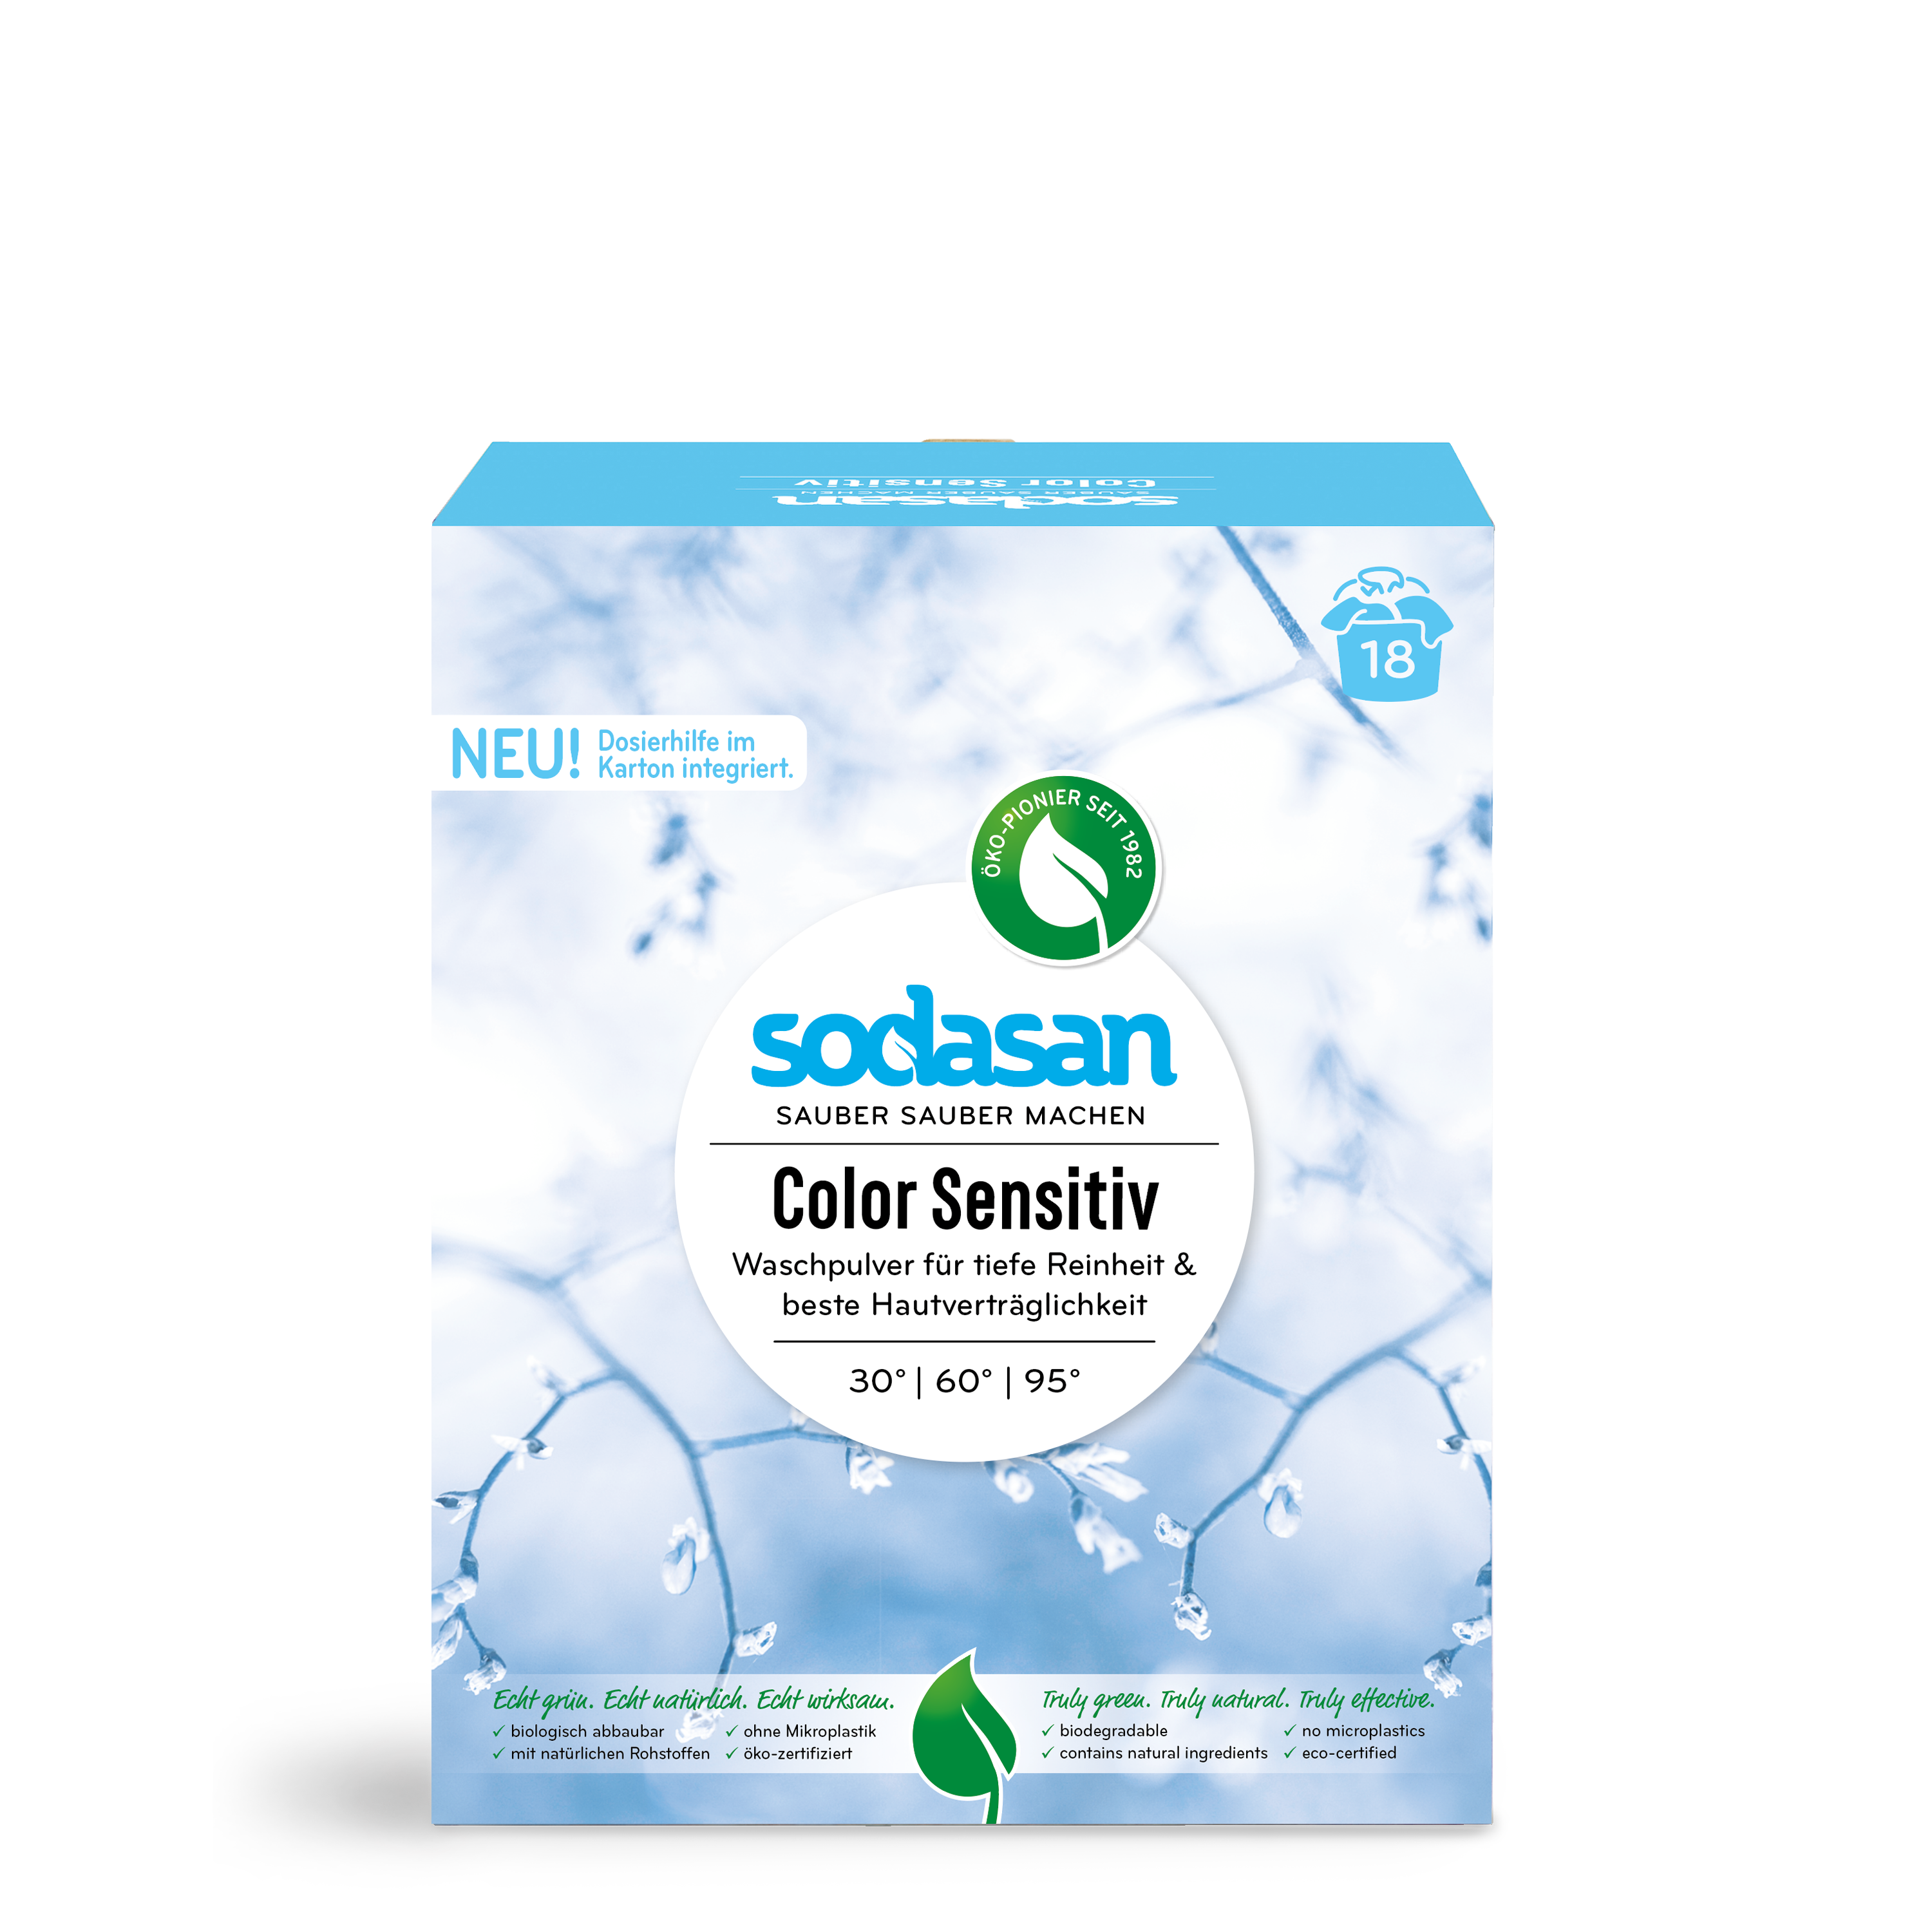 Colour Laundry Powder Sensitive